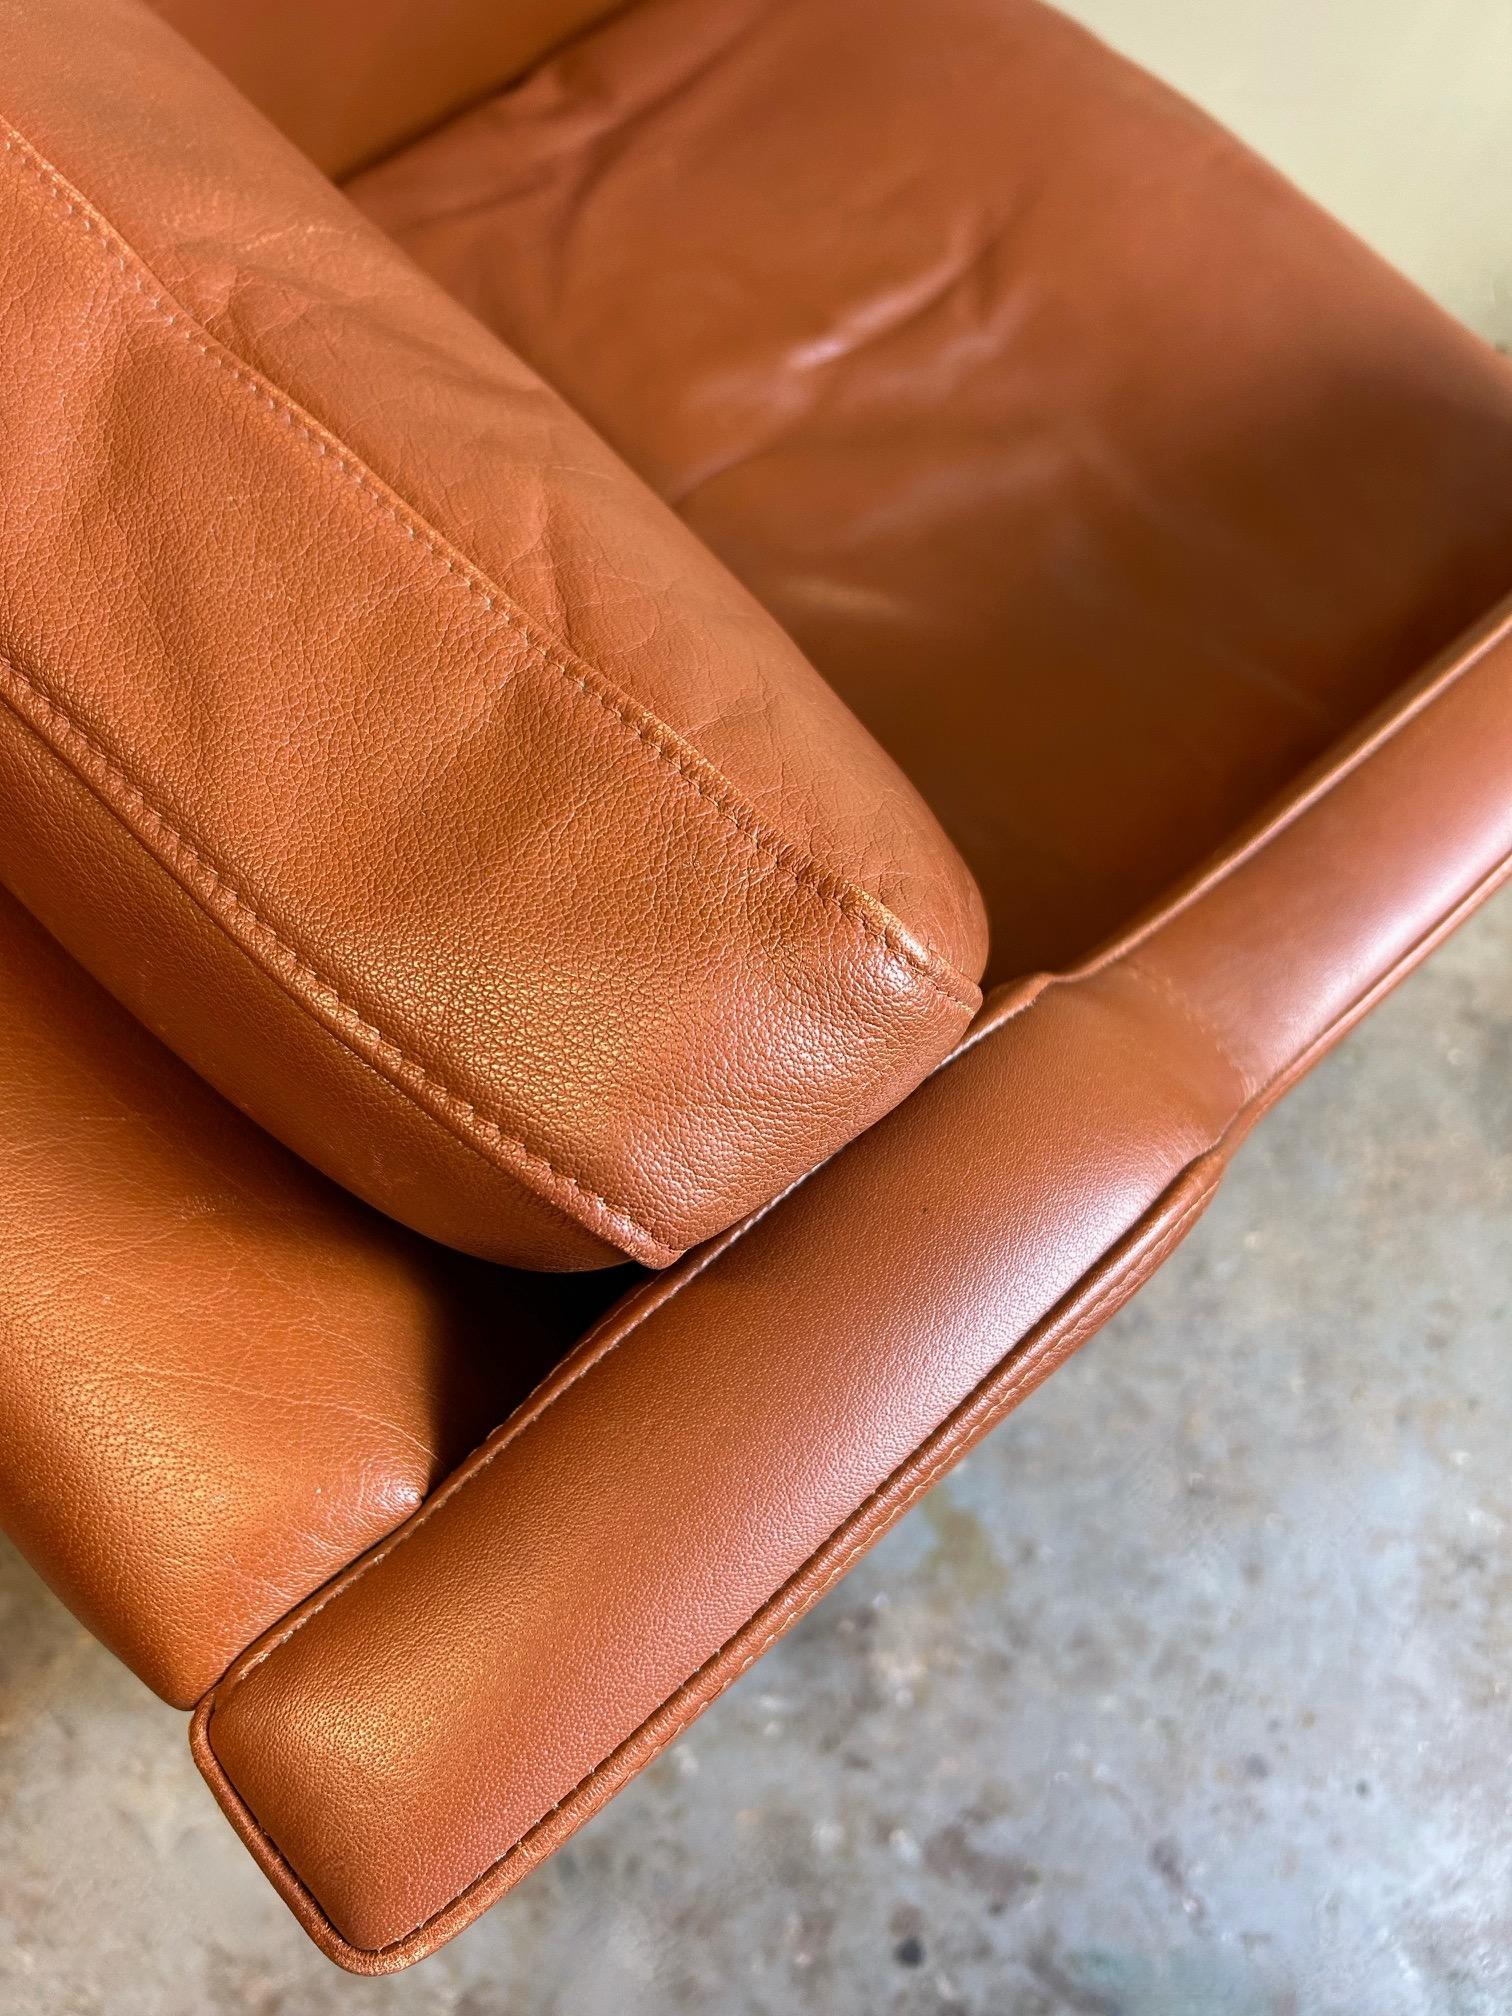 Ce magnifique fauteuil danois en cuir fauve de la marque Stouby constitue un ajout élégant à tout espace de vie ou de travail.

La chaise est dotée d'une large assise et d'un dossier rembourré pour un meilleur confort. Un meuble scandinave classique